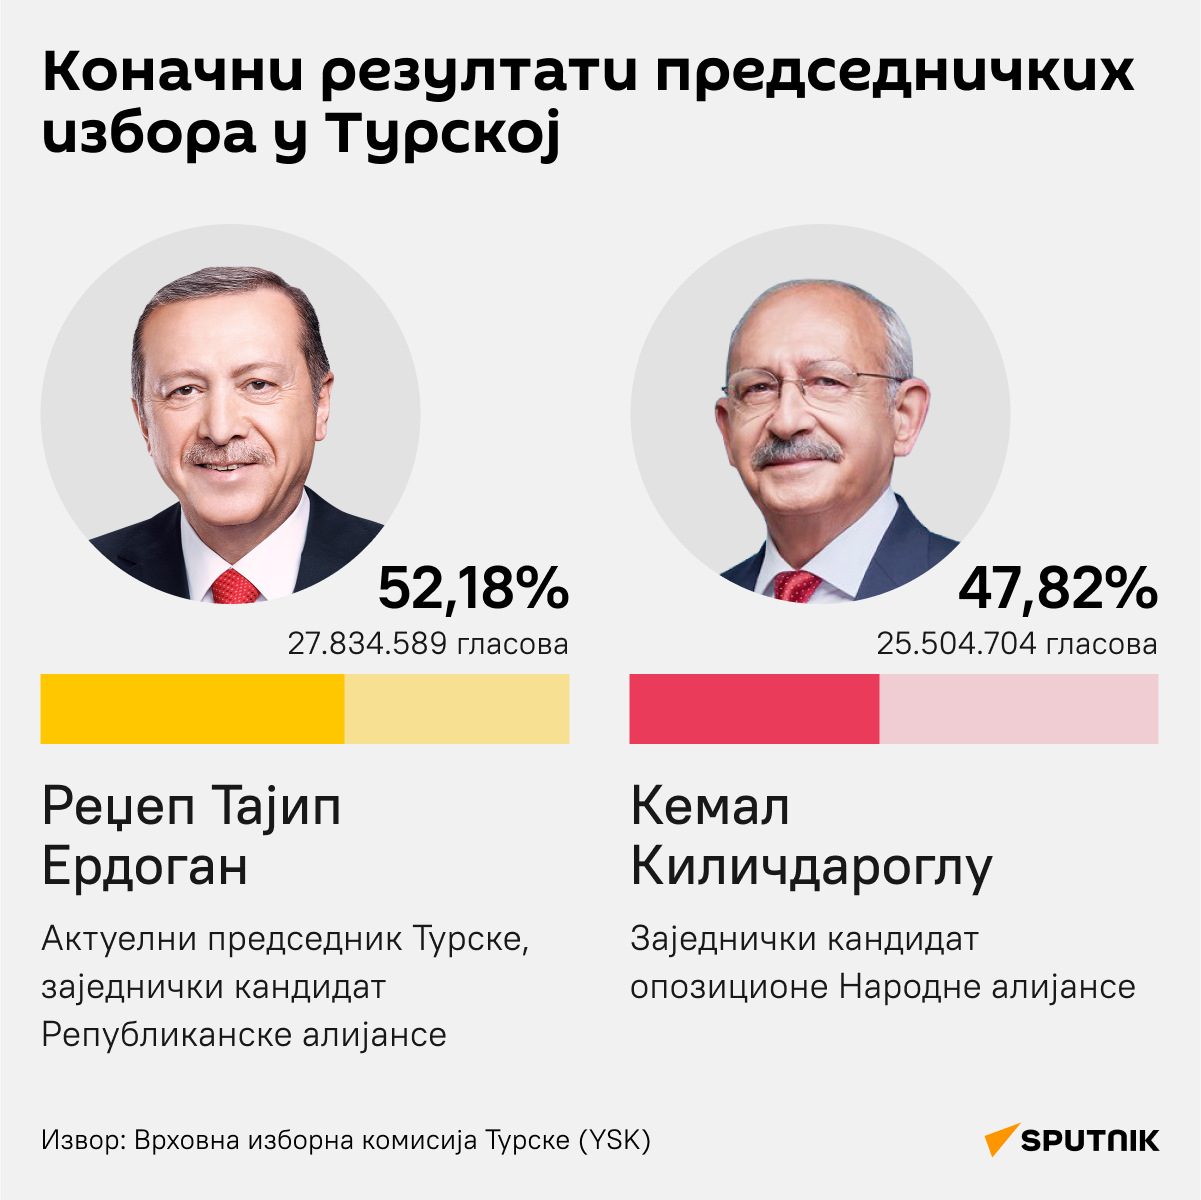 Инфографика Коначни резултати председничких избора у Турској   ЋИРИЛИЦА деск - Sputnik Србија